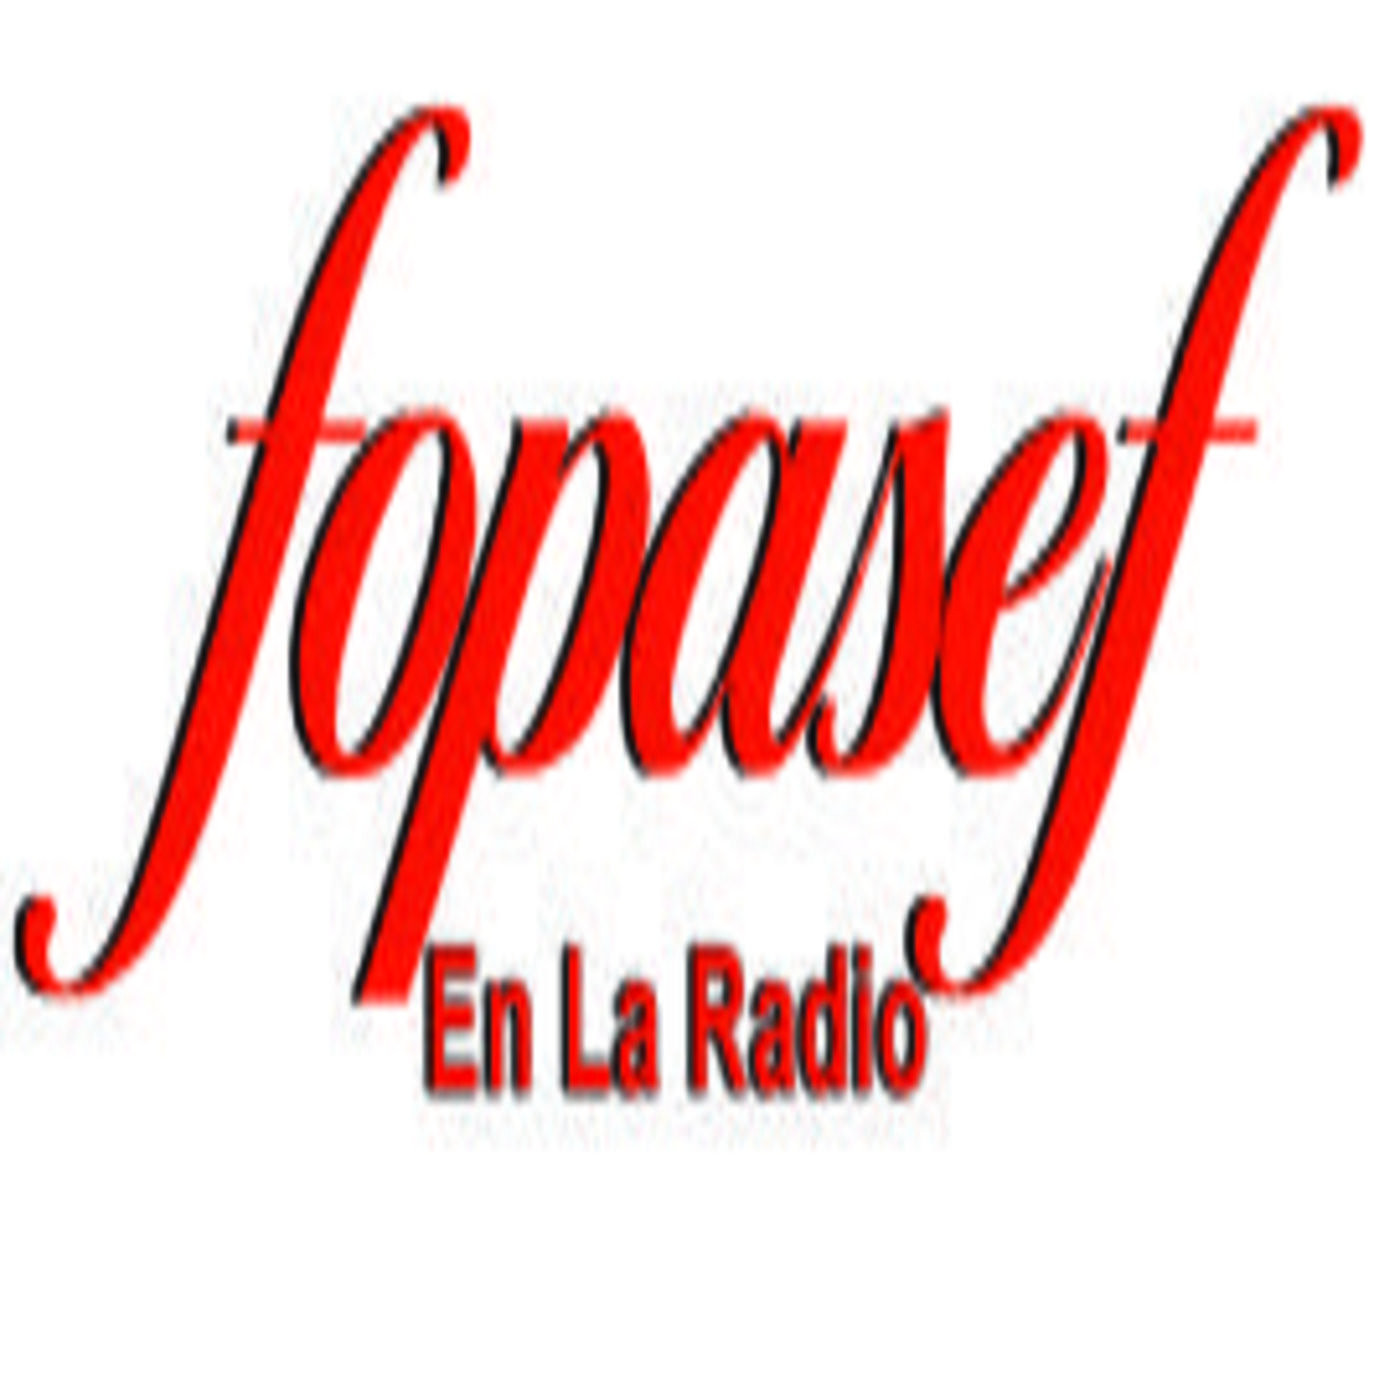 Podcast FOPASEF EN LA RADIO